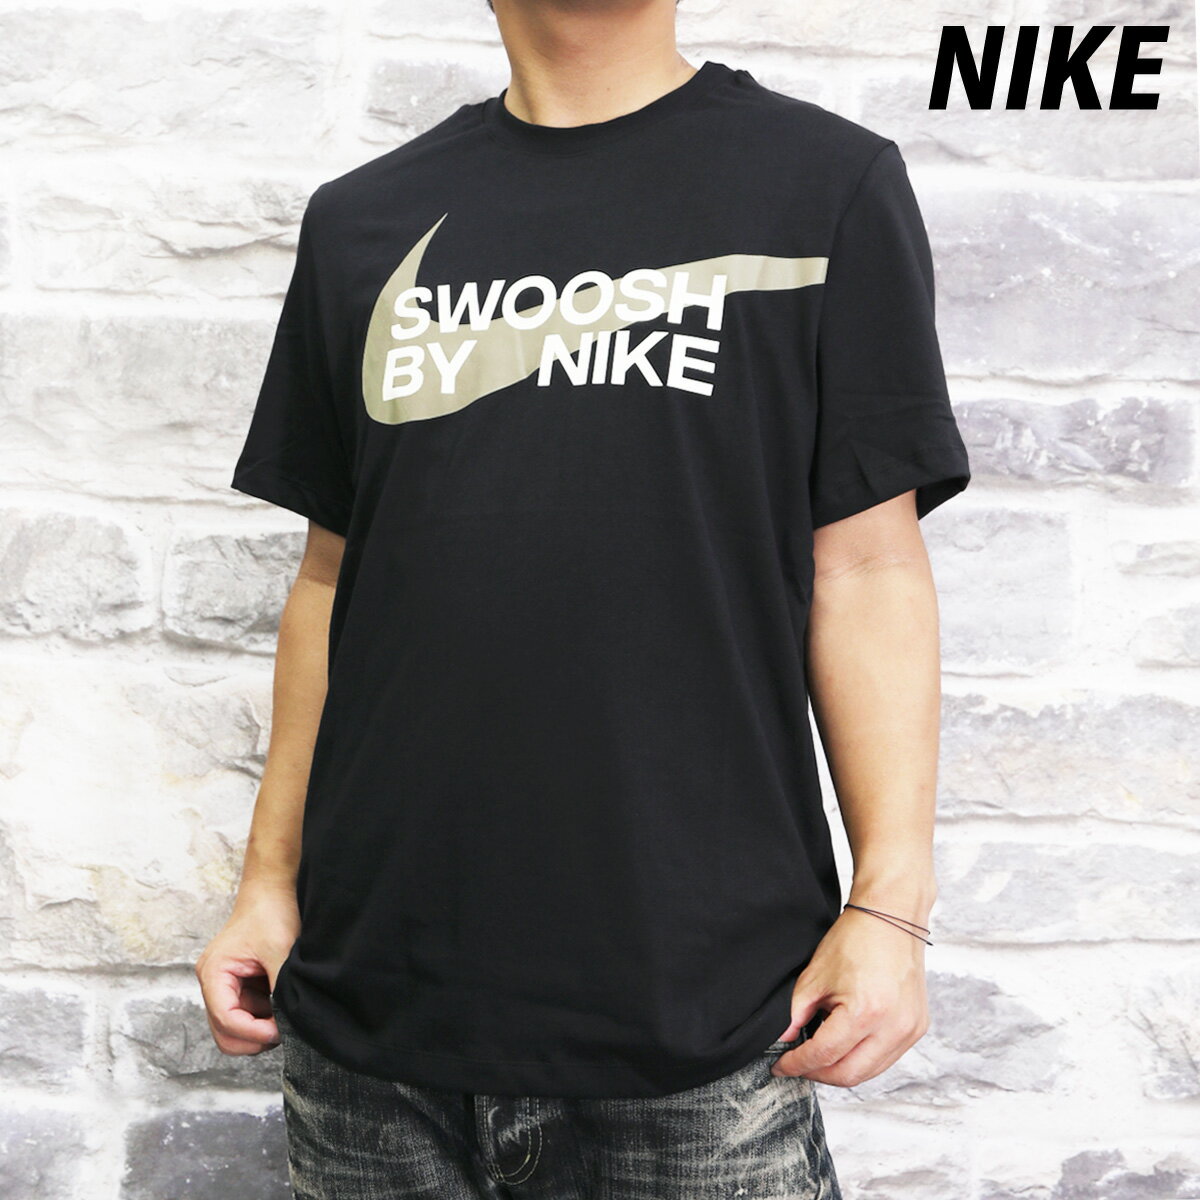 ナイキ SALE セール ナイキ Tシャツ 上 メンズ NIKE 半袖 コットン100% 綿T ビックロゴ スウッシュ FD1248| 大きいサイズ 有 スポーツウェア トレーニングウェア